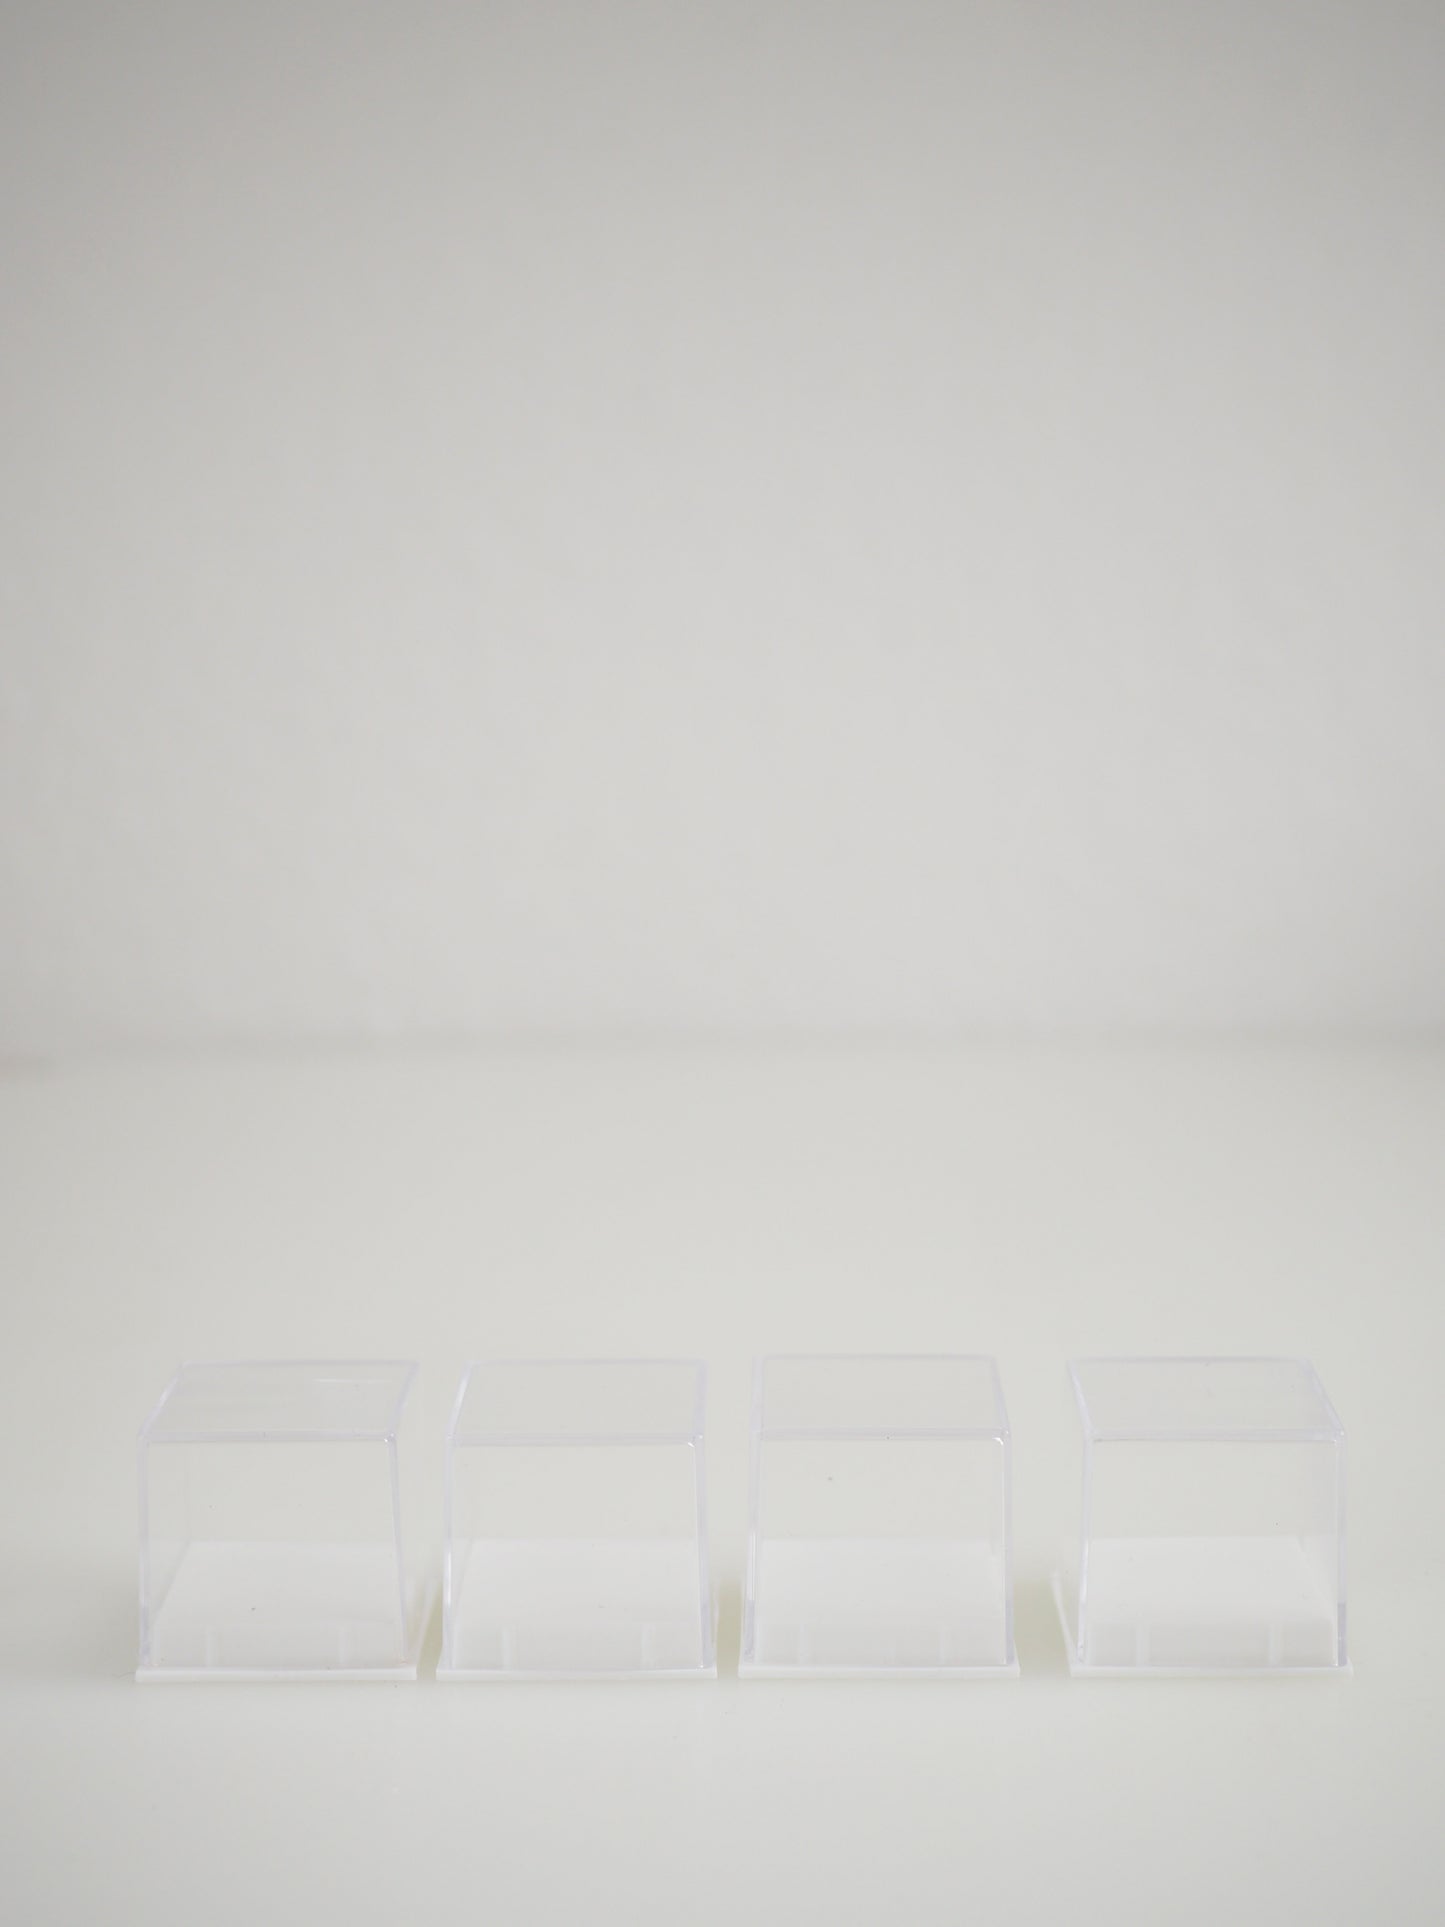 4Stk. Mineralien Box 3 x 3 cm . Weiss Transparent für Mini Minerals